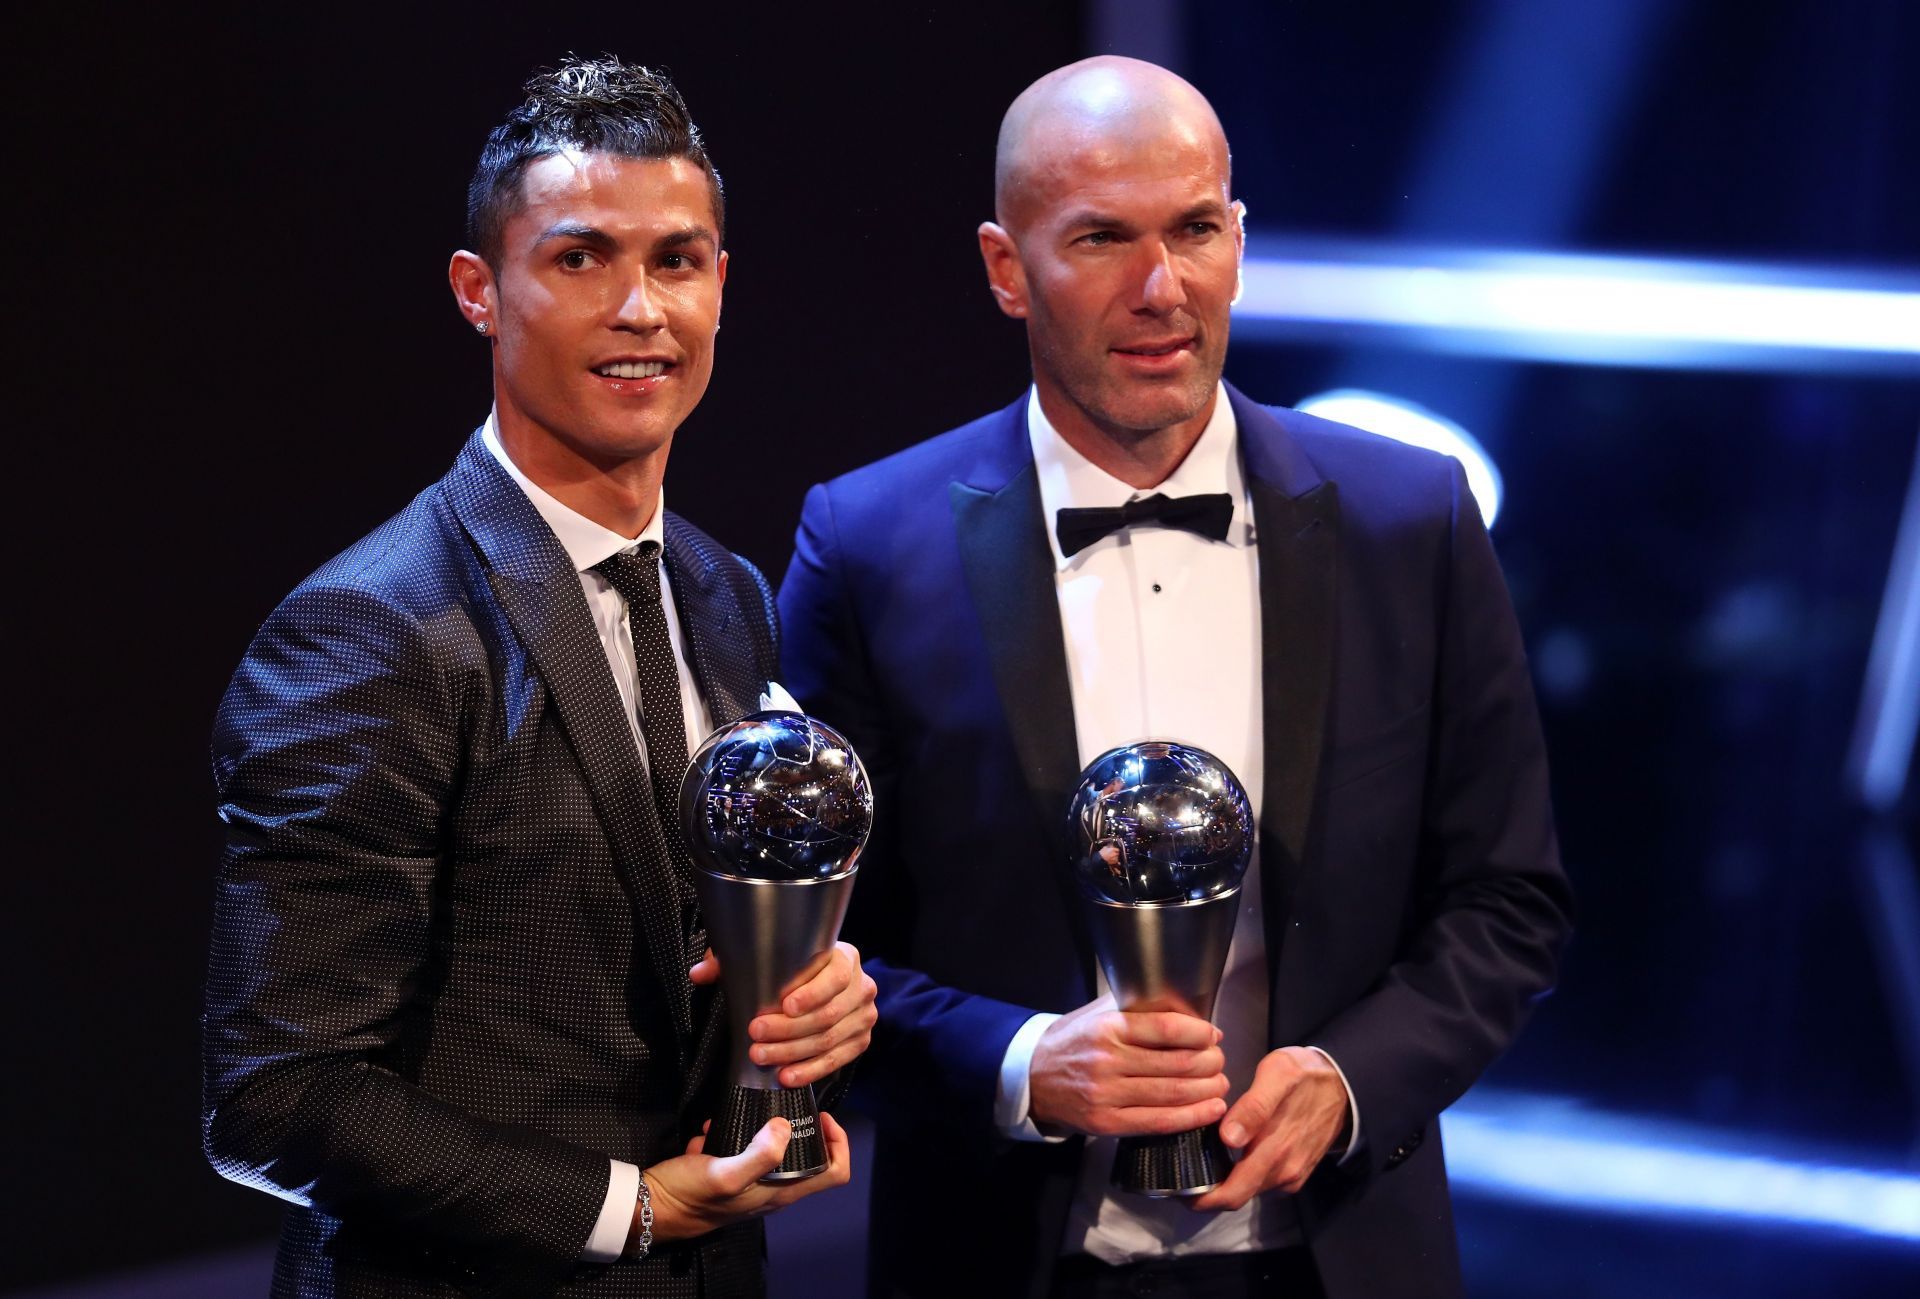 The Best FIFA Football Awards Show - Zidane (right) and Cristiano Ronaldo